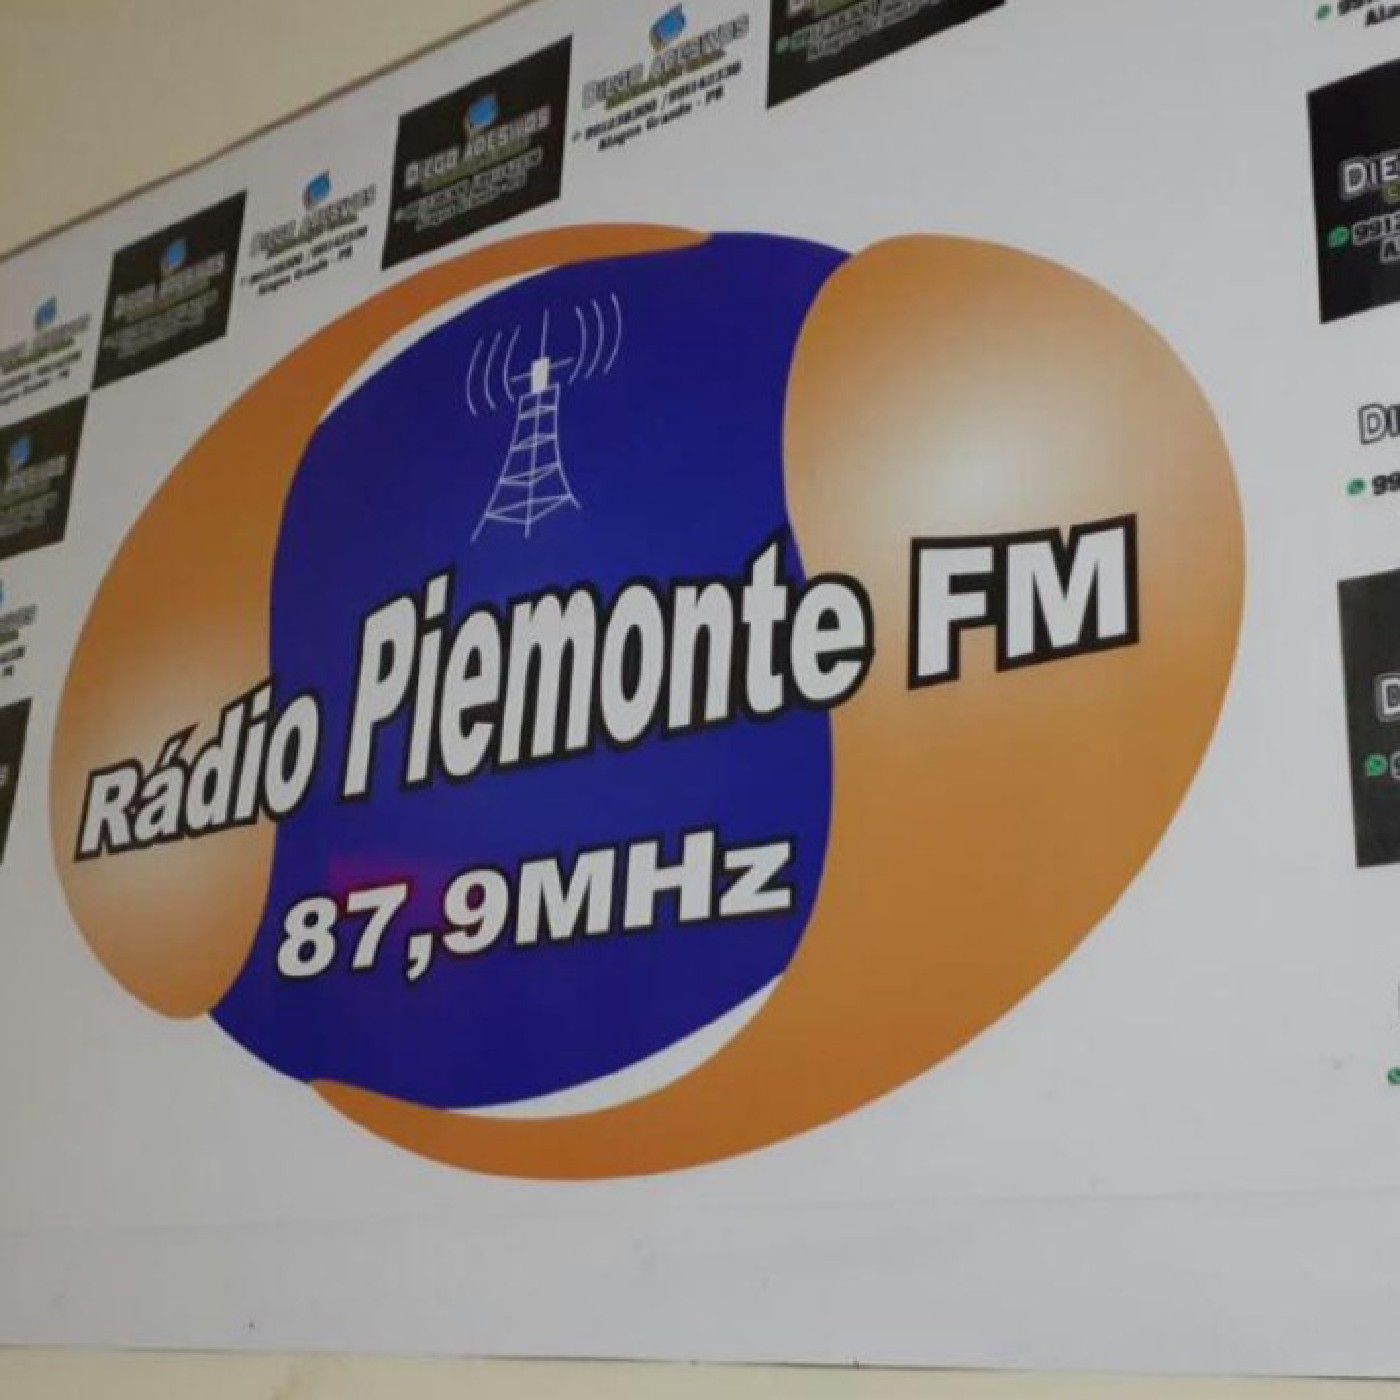 PIEMONTE FM